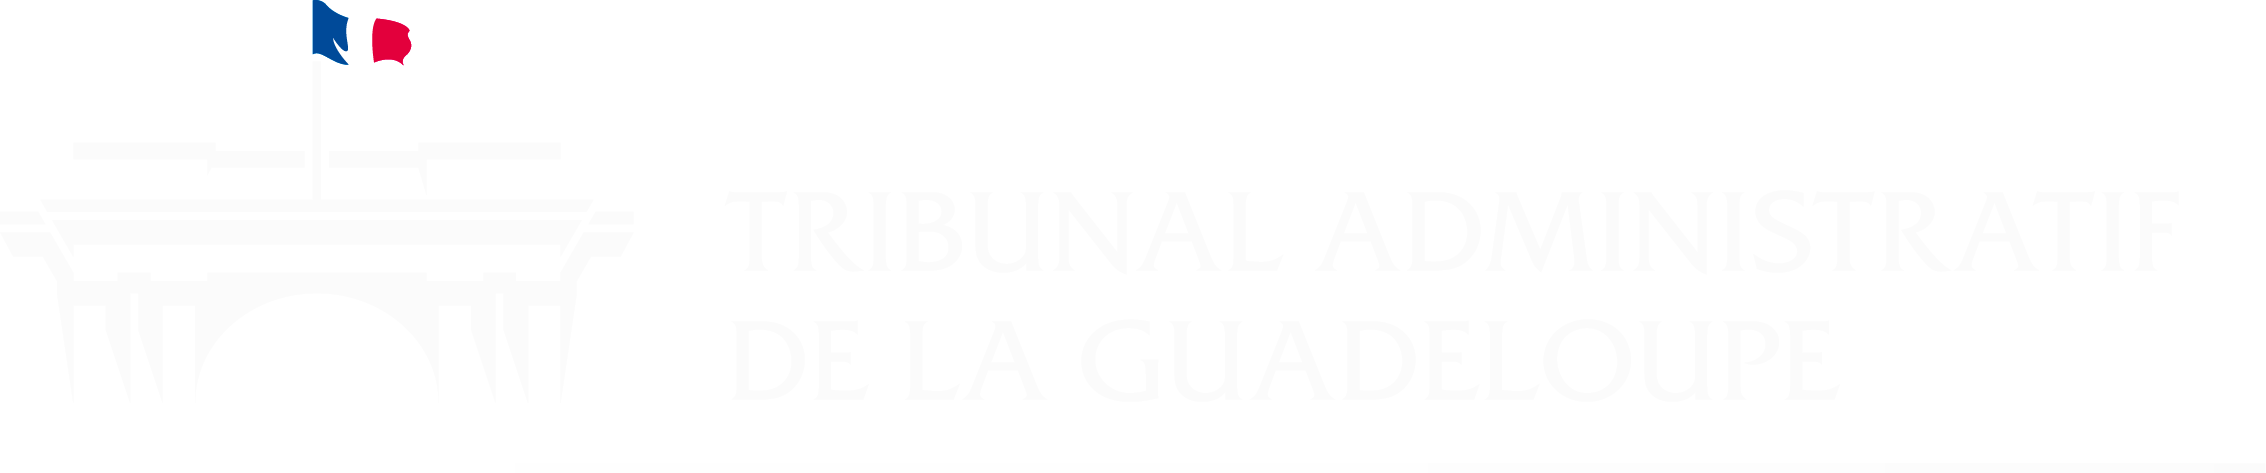 Tribunal administratif de Guadeloupe - Retour à l'accueil